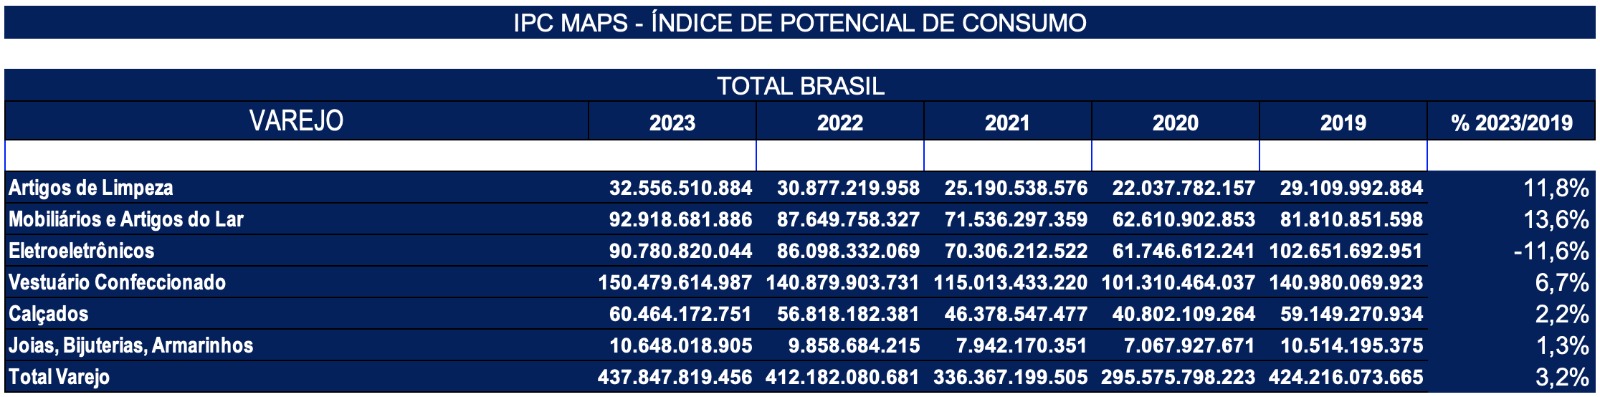 Pesquisa IPC Maps Varejo Brasil 2019 a 23